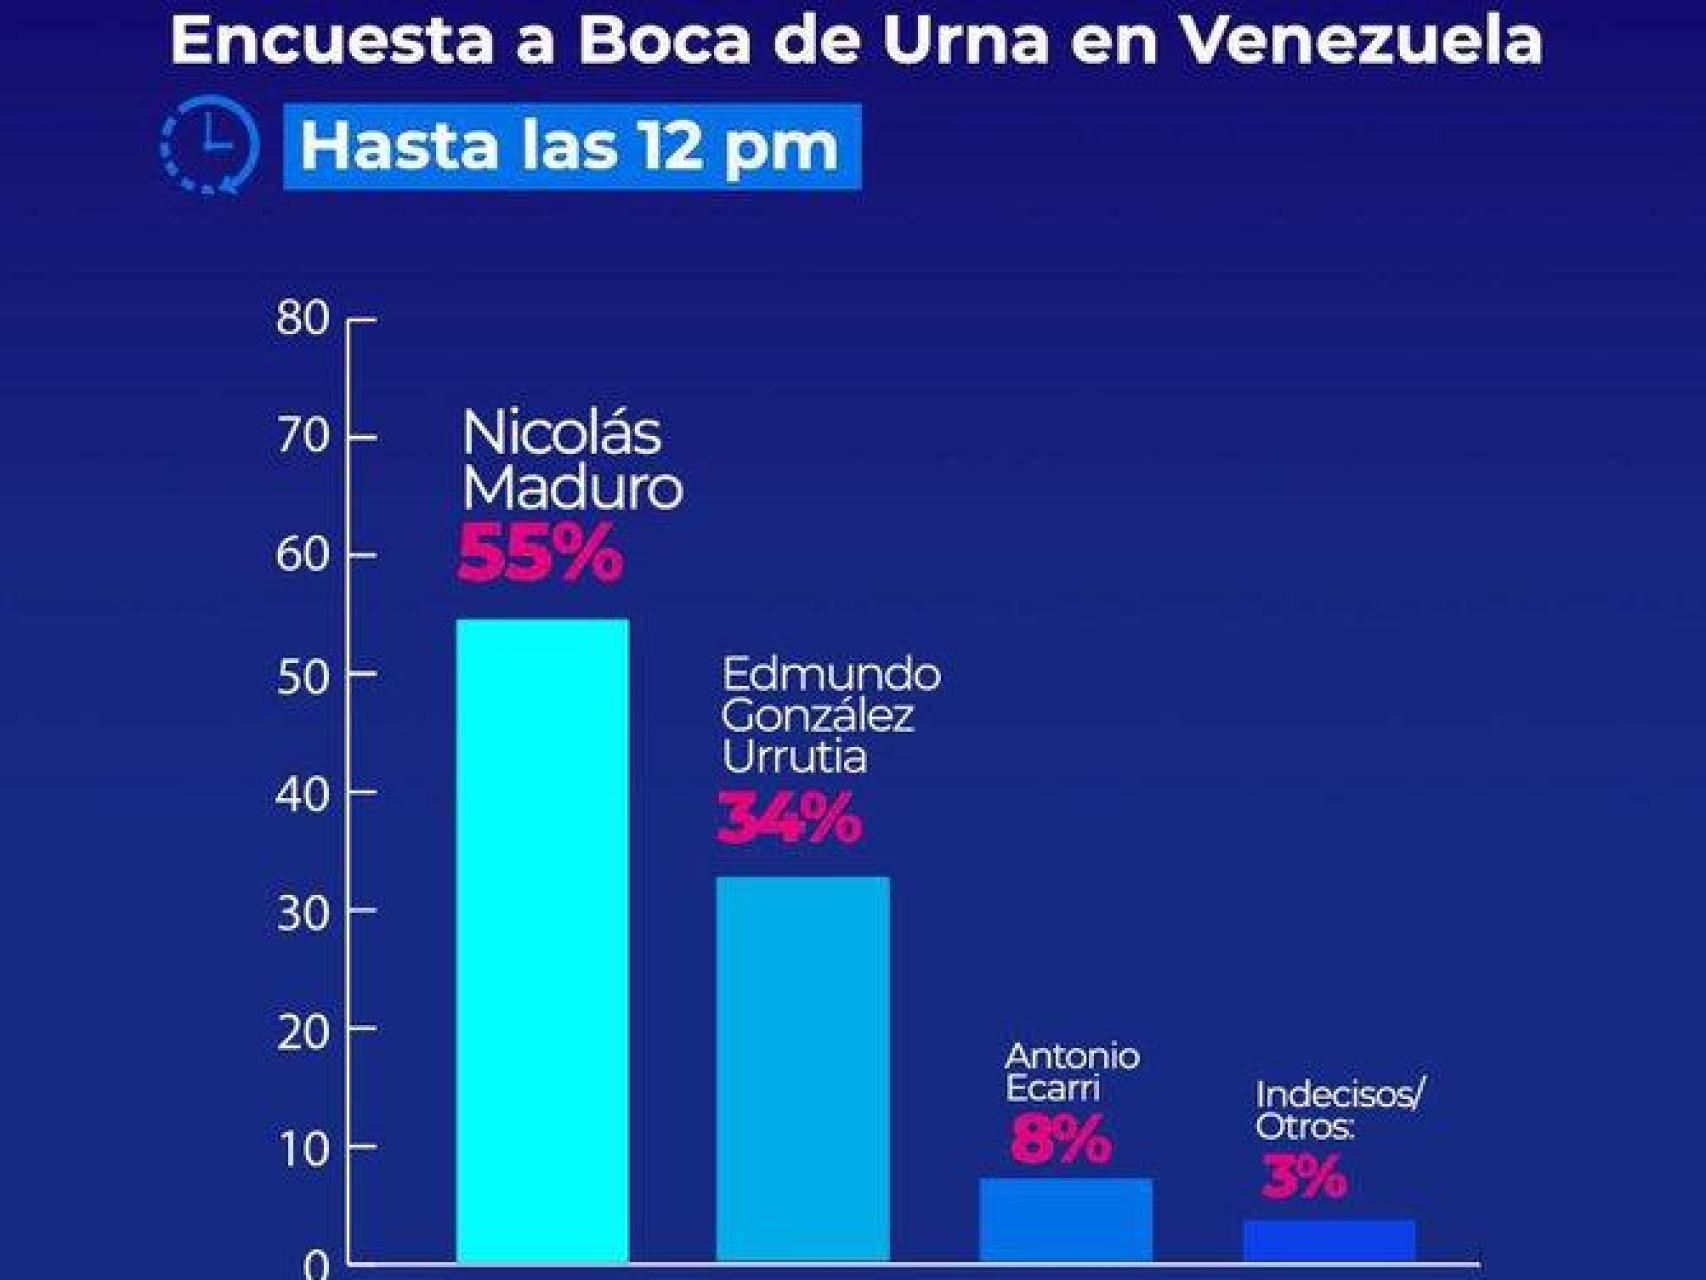 La encuesta falsa difundida en redes sociales por dirigentes chavistas.